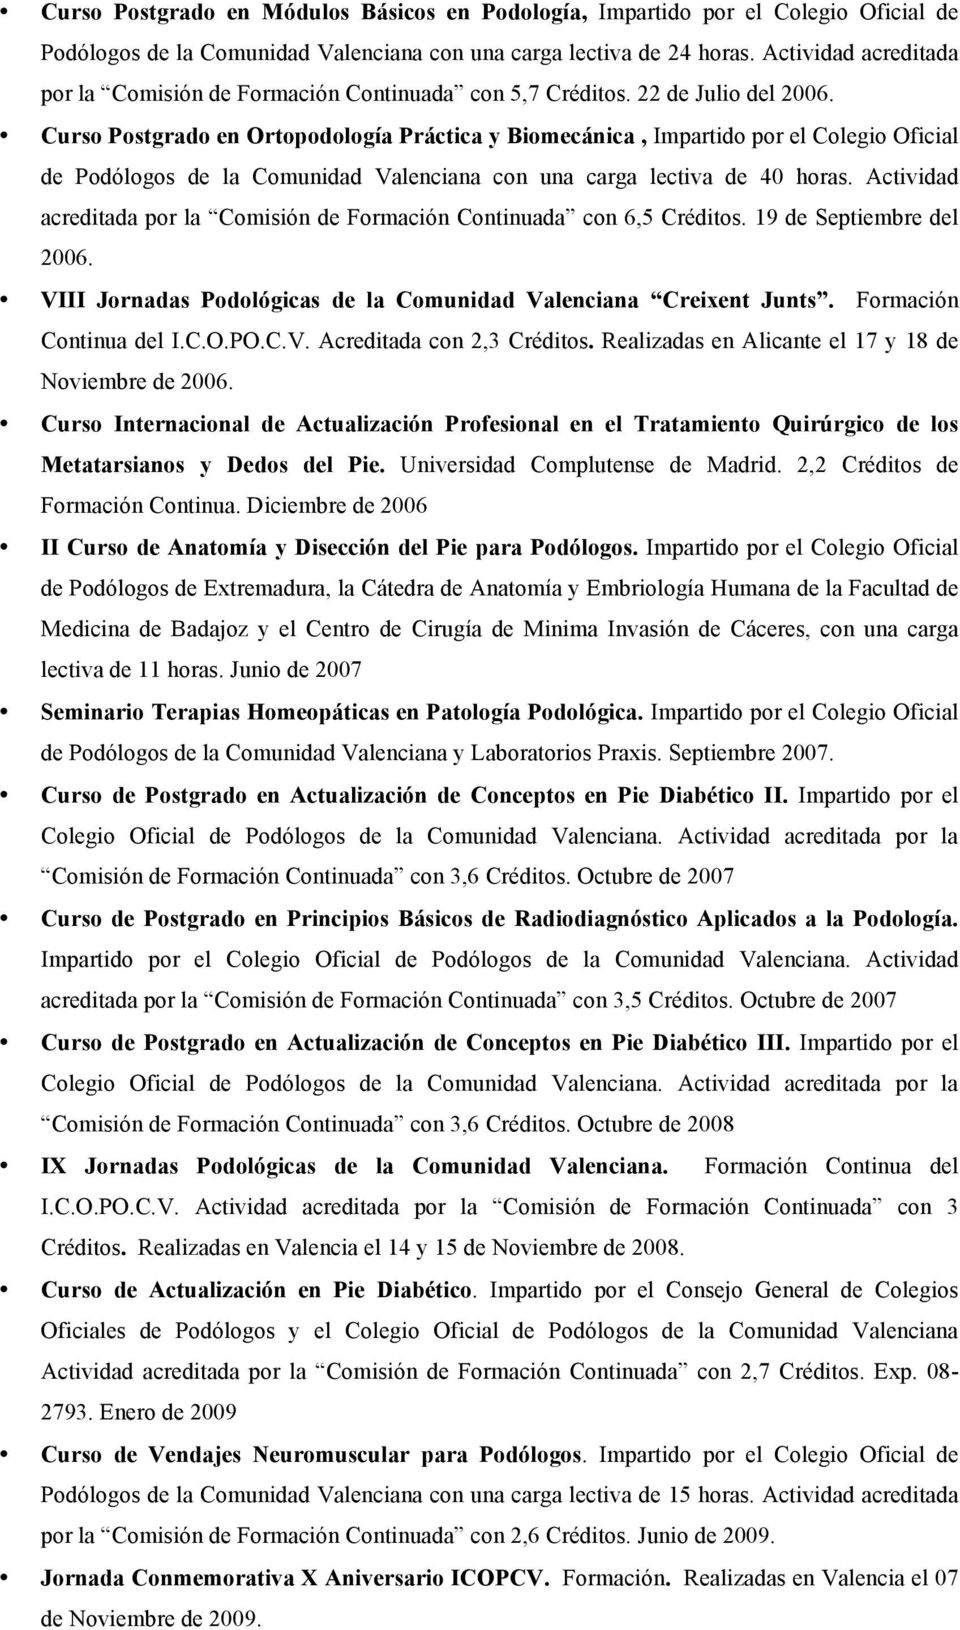 Curso Postgrado en Ortopodología Práctica y Biomecánica, Impartido por el Colegio Oficial de Podólogos de la Comunidad Valenciana con una carga lectiva de 40 horas.